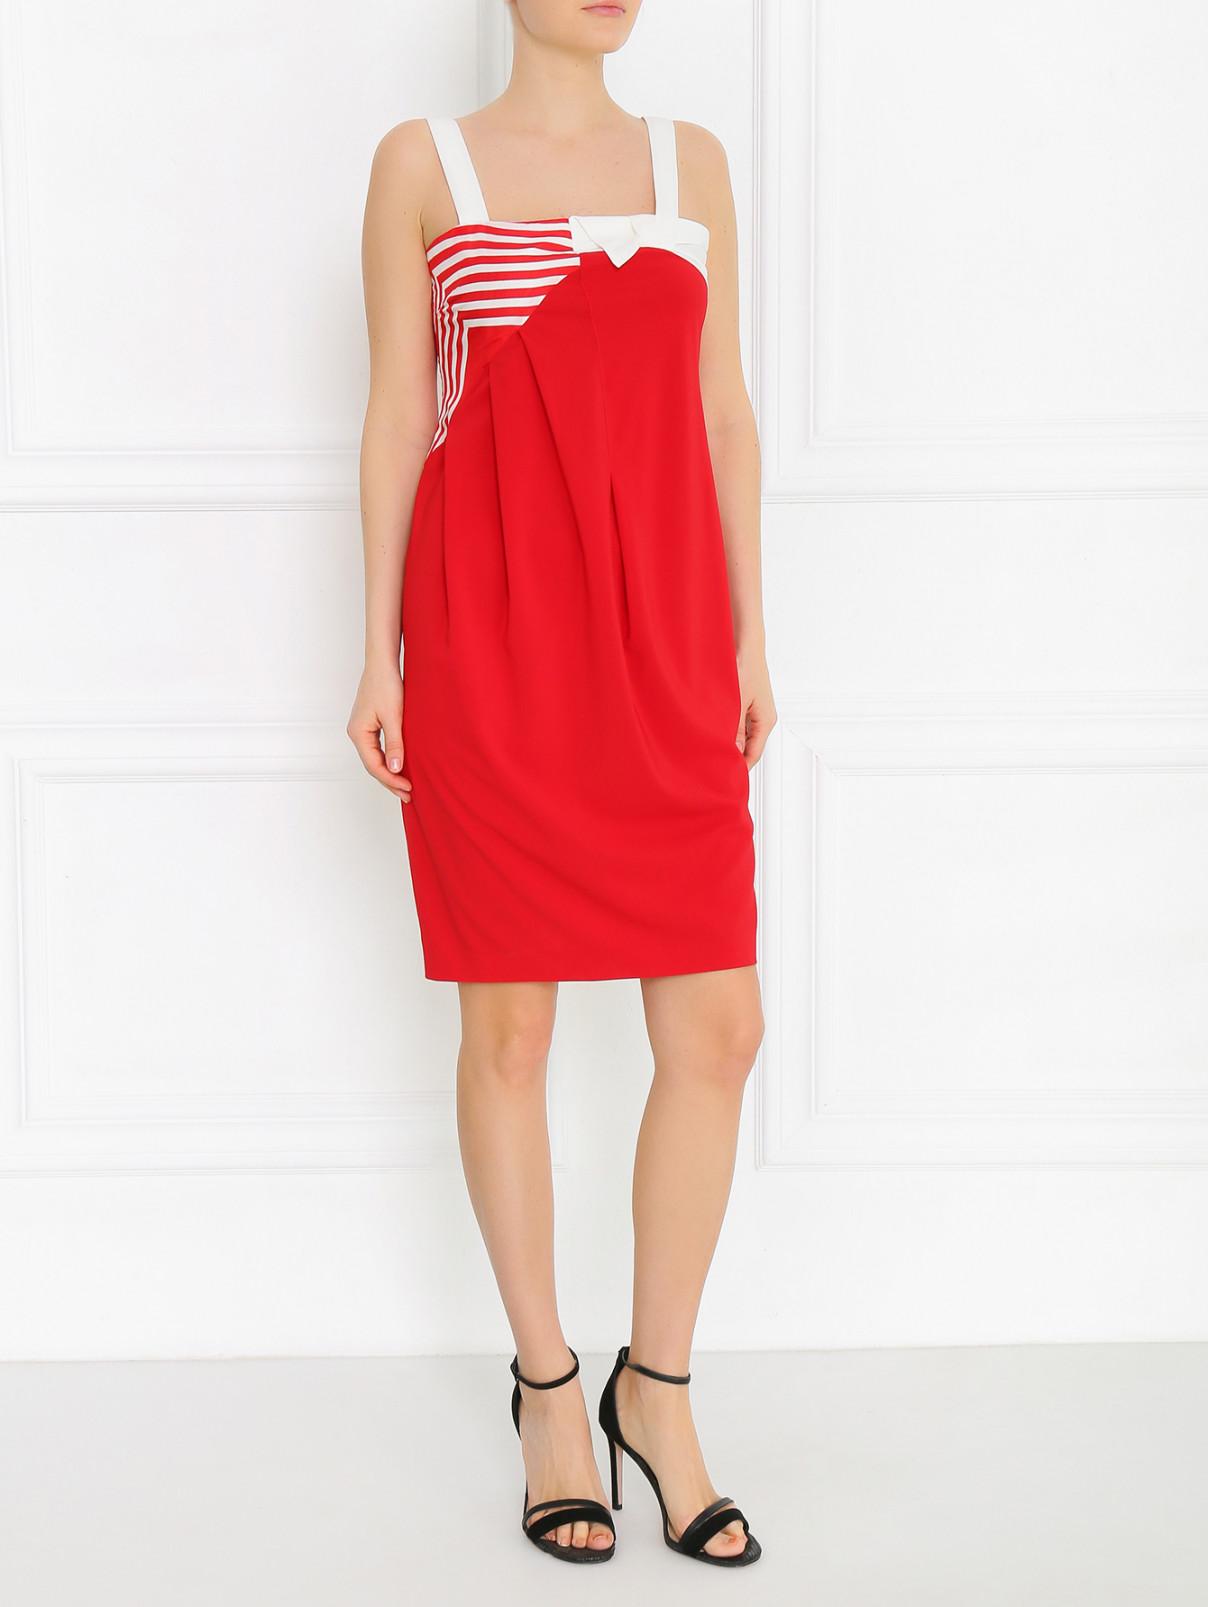 Платье-мини с узором "полоска" Isola Marras  –  Модель Общий вид  – Цвет:  Красный